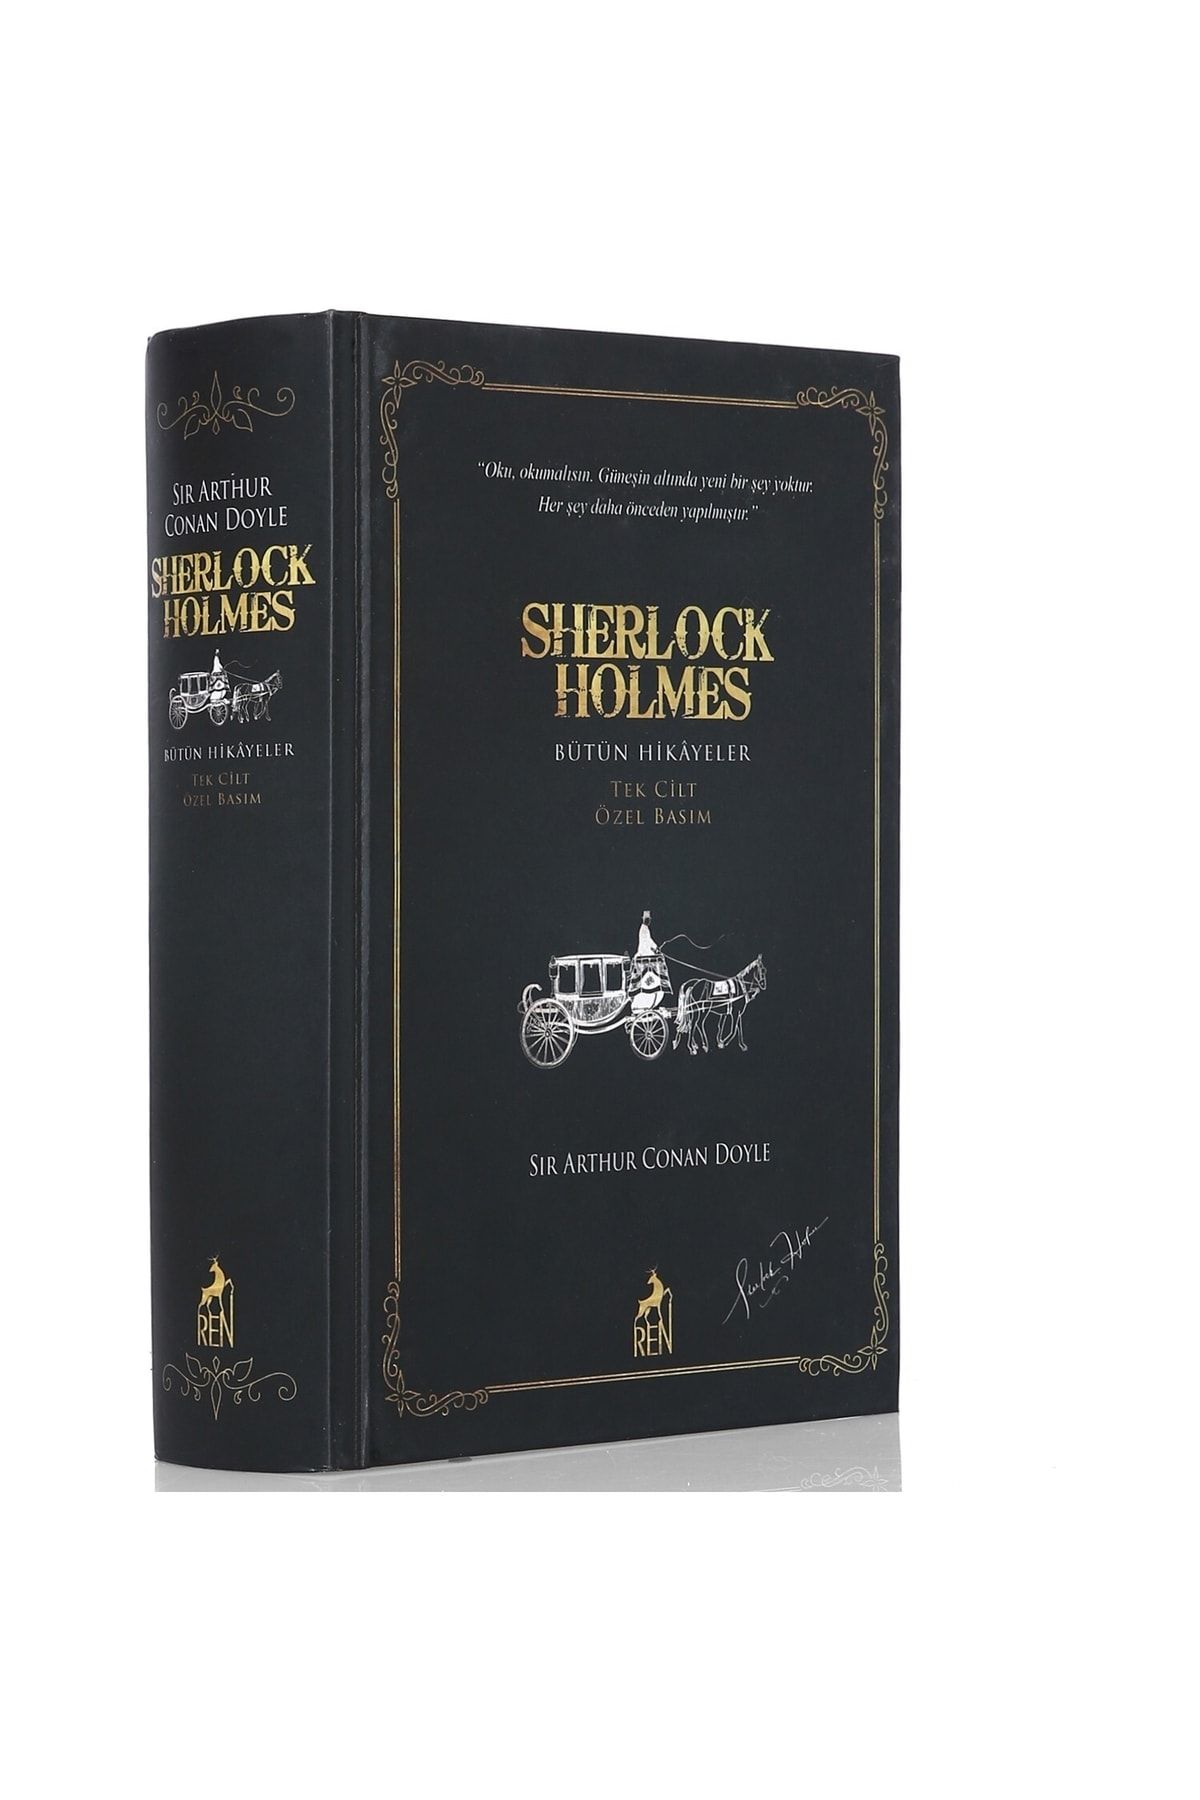 Ren Kitap Sherlock Holmes-bütün Hikayeler Tek Cilt Özel Basım - Sir Arthur Conan Doyle